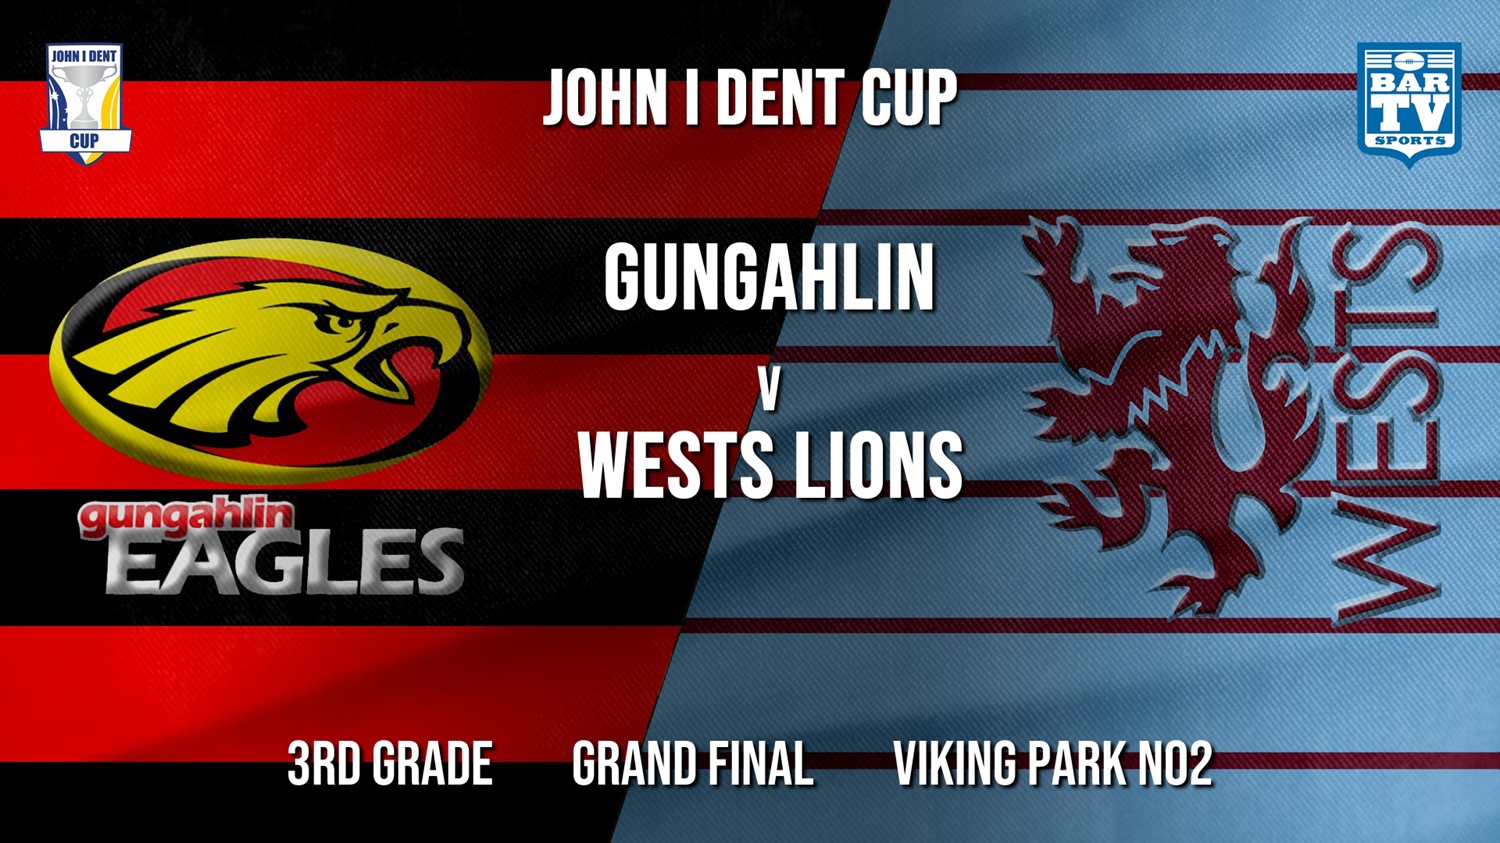 John I Dent Grand Final - 3rd Grade - Gungahlin Eagles v Wests Lions Slate Image